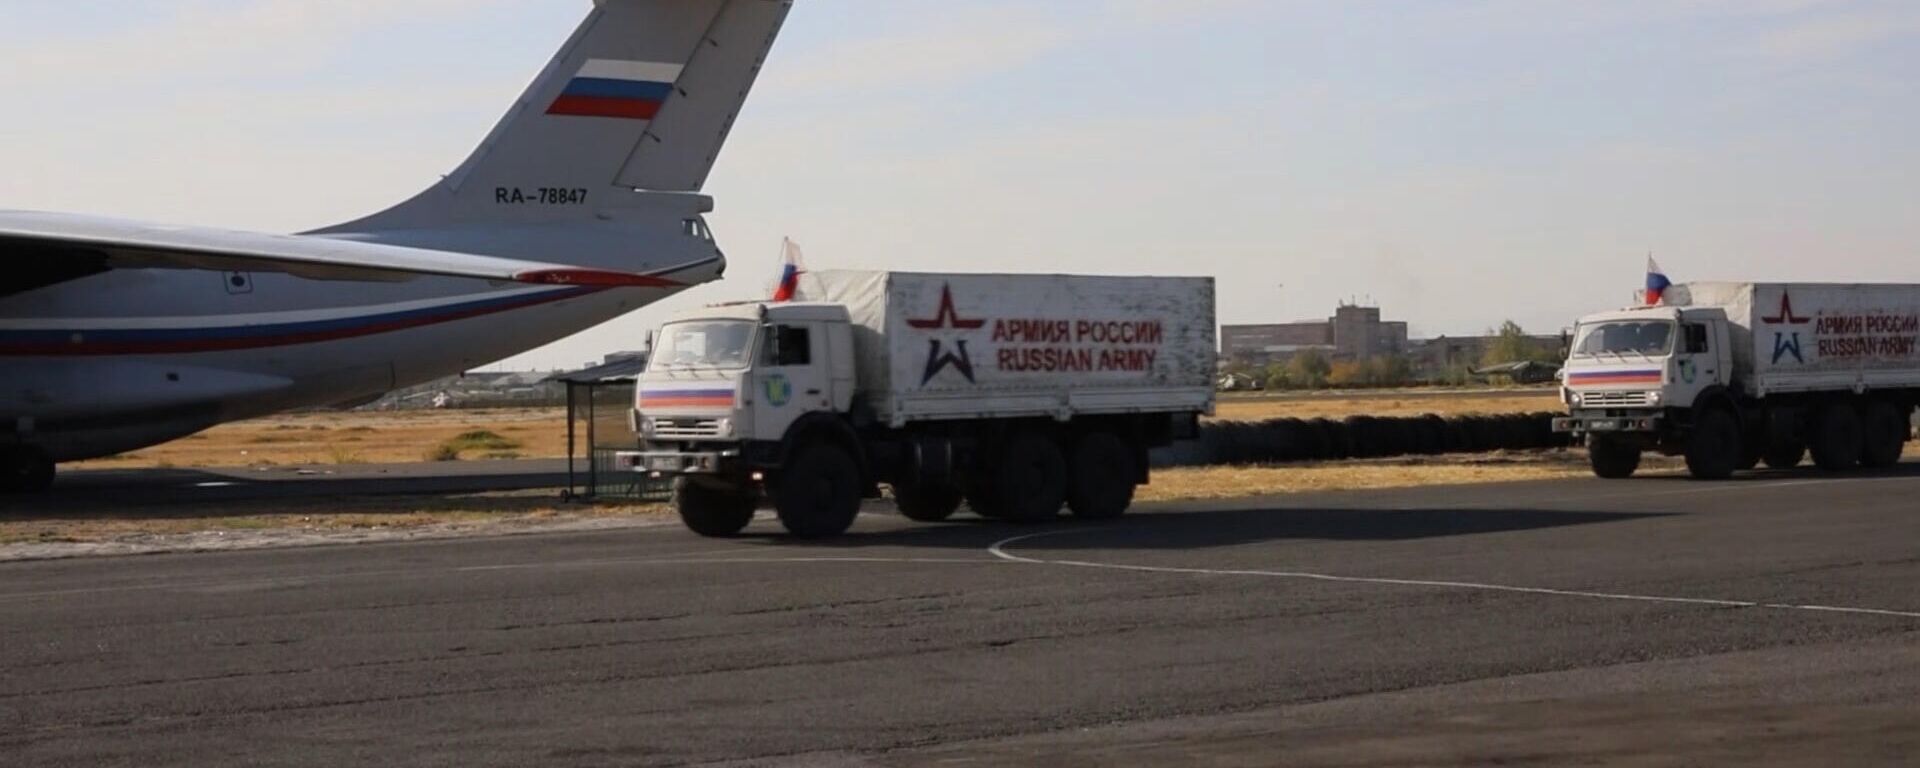 Российские миротворцы доставили в Нагорный Карабах 10 тонн гуманитарной помощи, собранной благотворительными организациями  - Sputnik Արմենիա, 1920, 19.10.2021